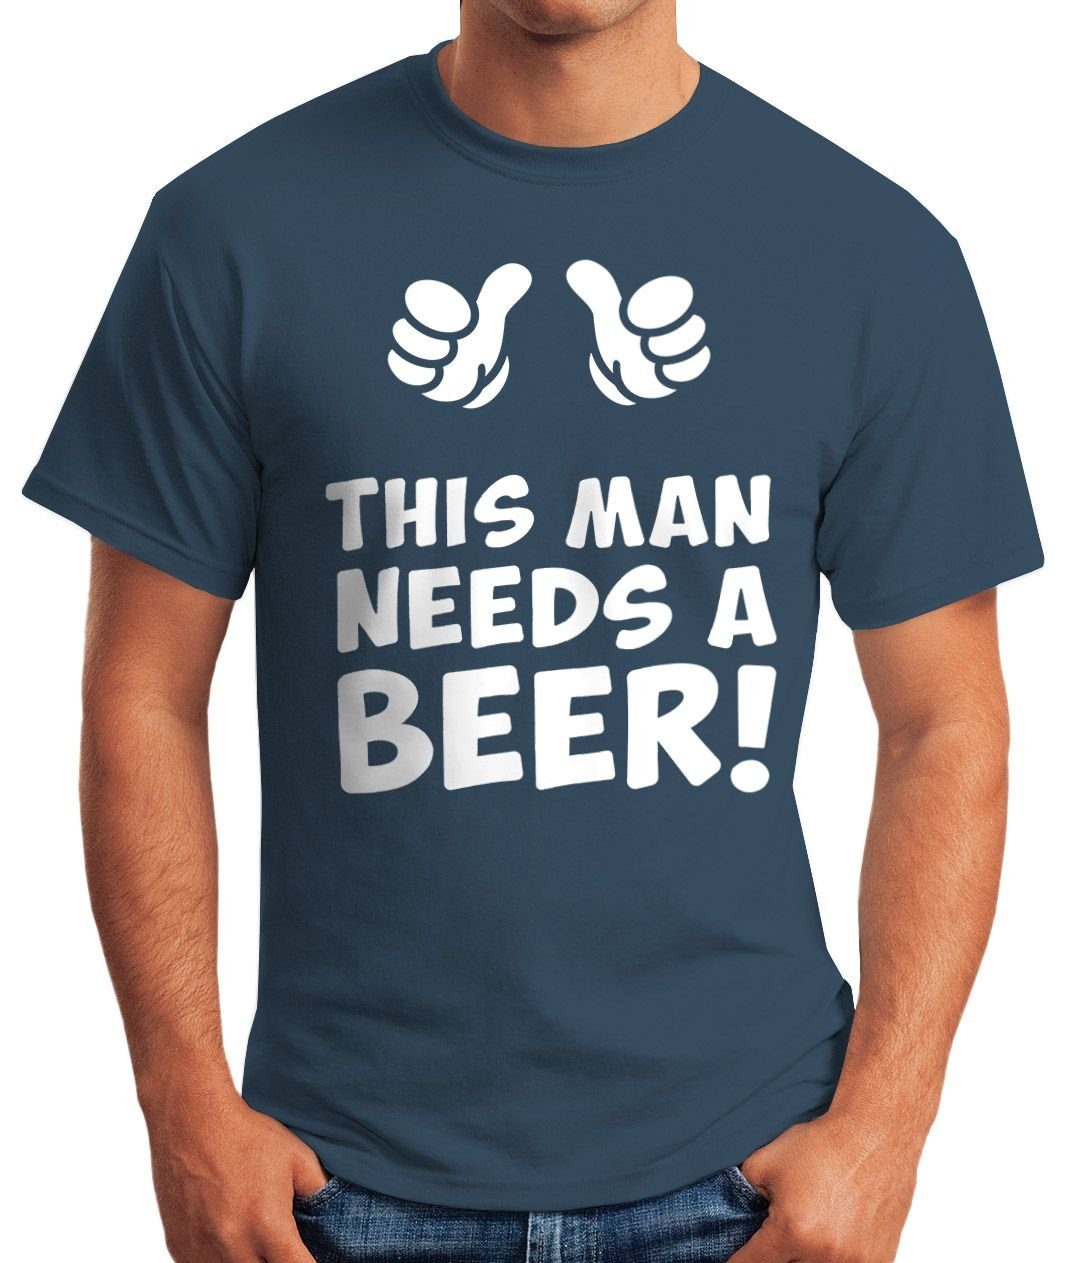 MoonWorks Print-Shirt Print Herren Moonworks® man T-Shirt a needs This blau mit beer Bier